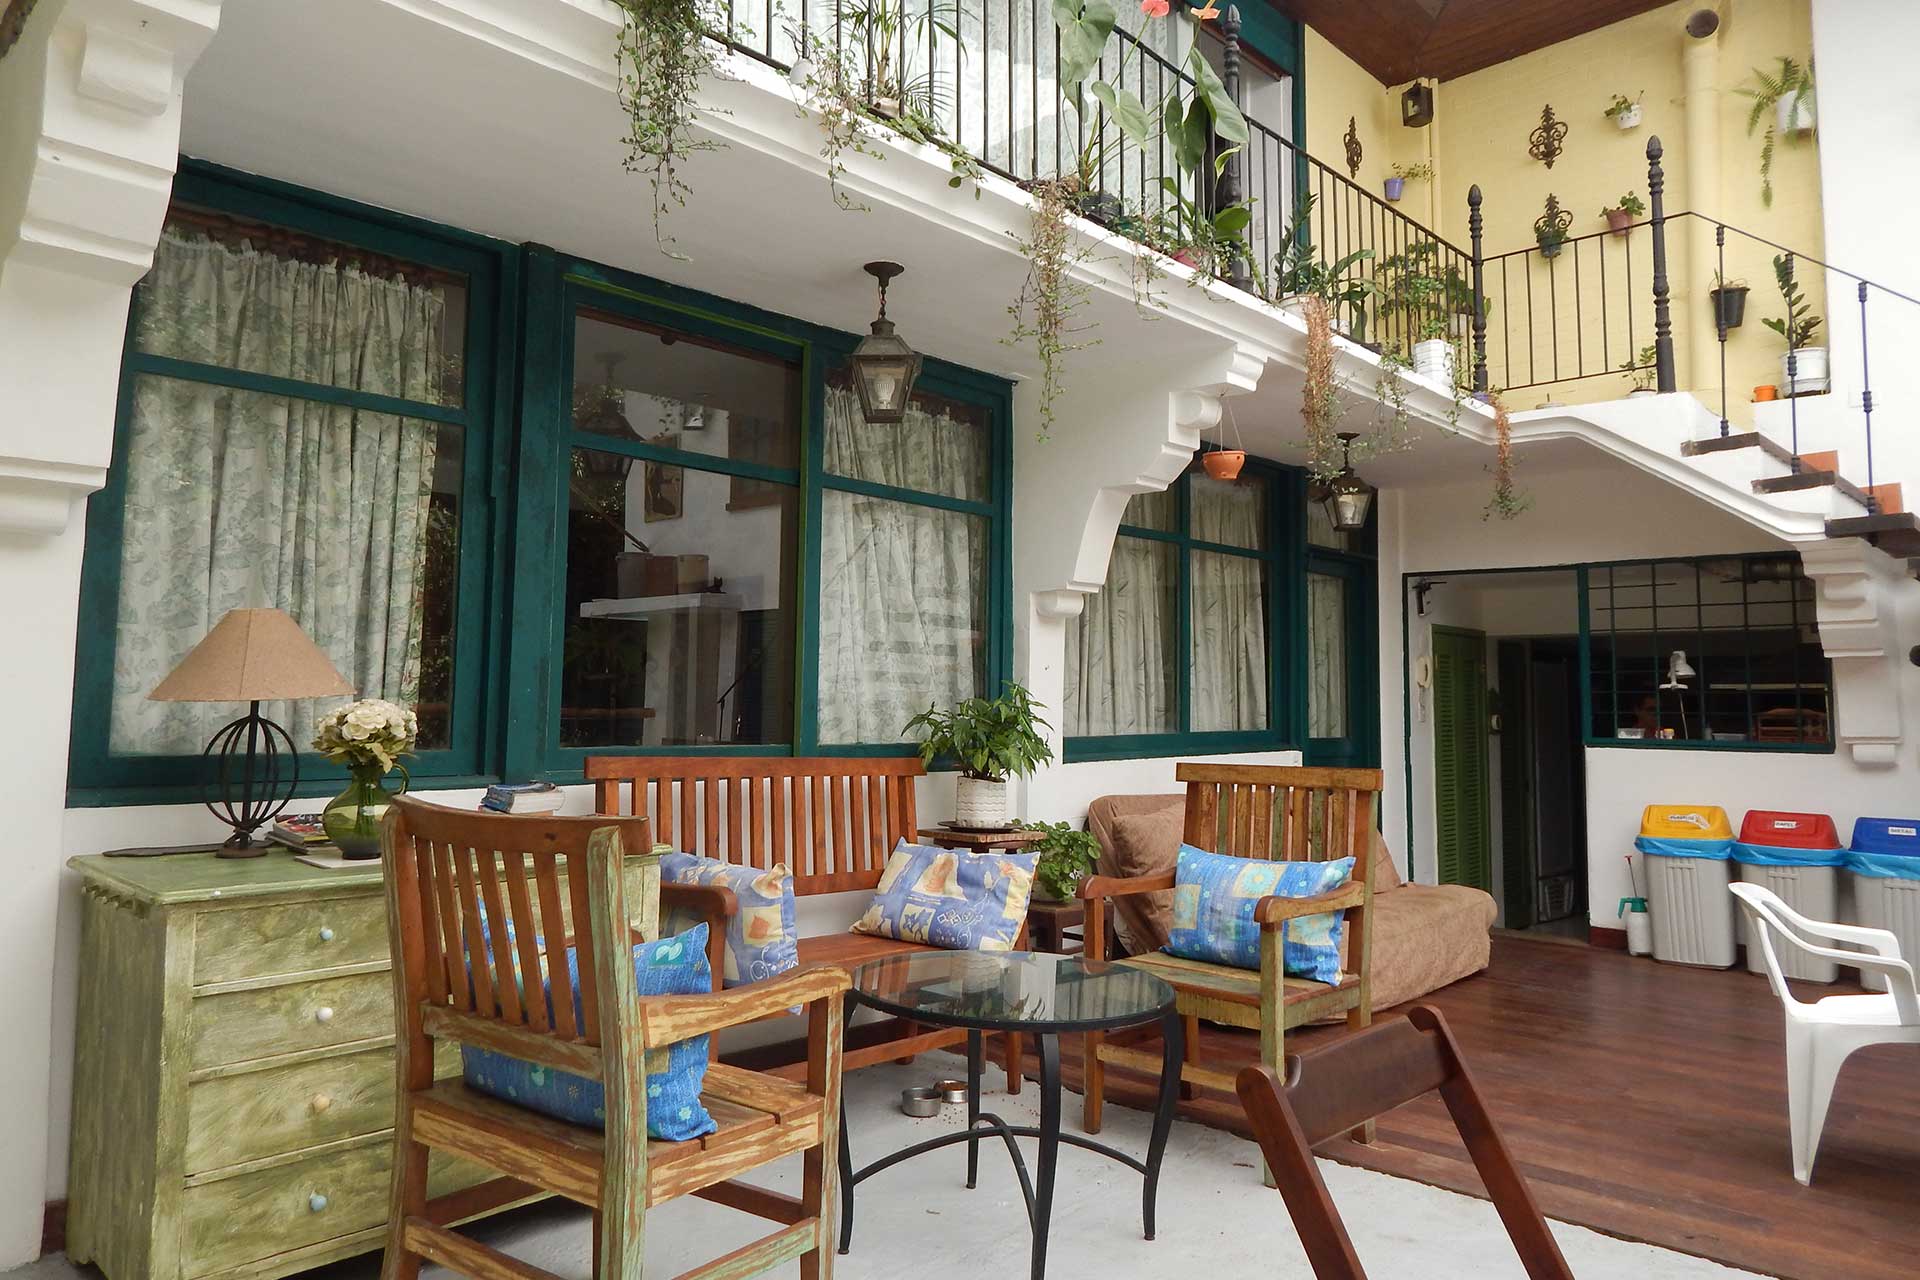 Casa São Conrado Guest House  Profitez de votre voyage à Rio de Janeiro